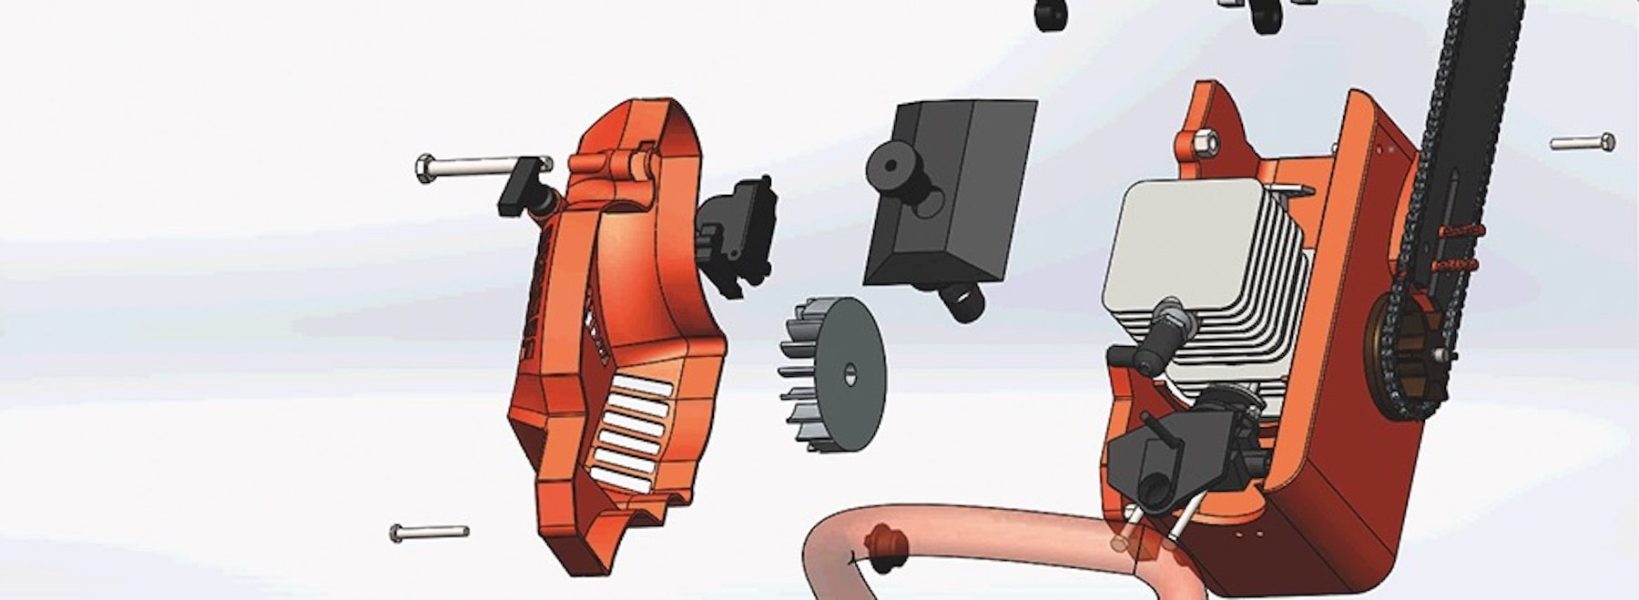 Modelação de uma motoserra: frames de animação